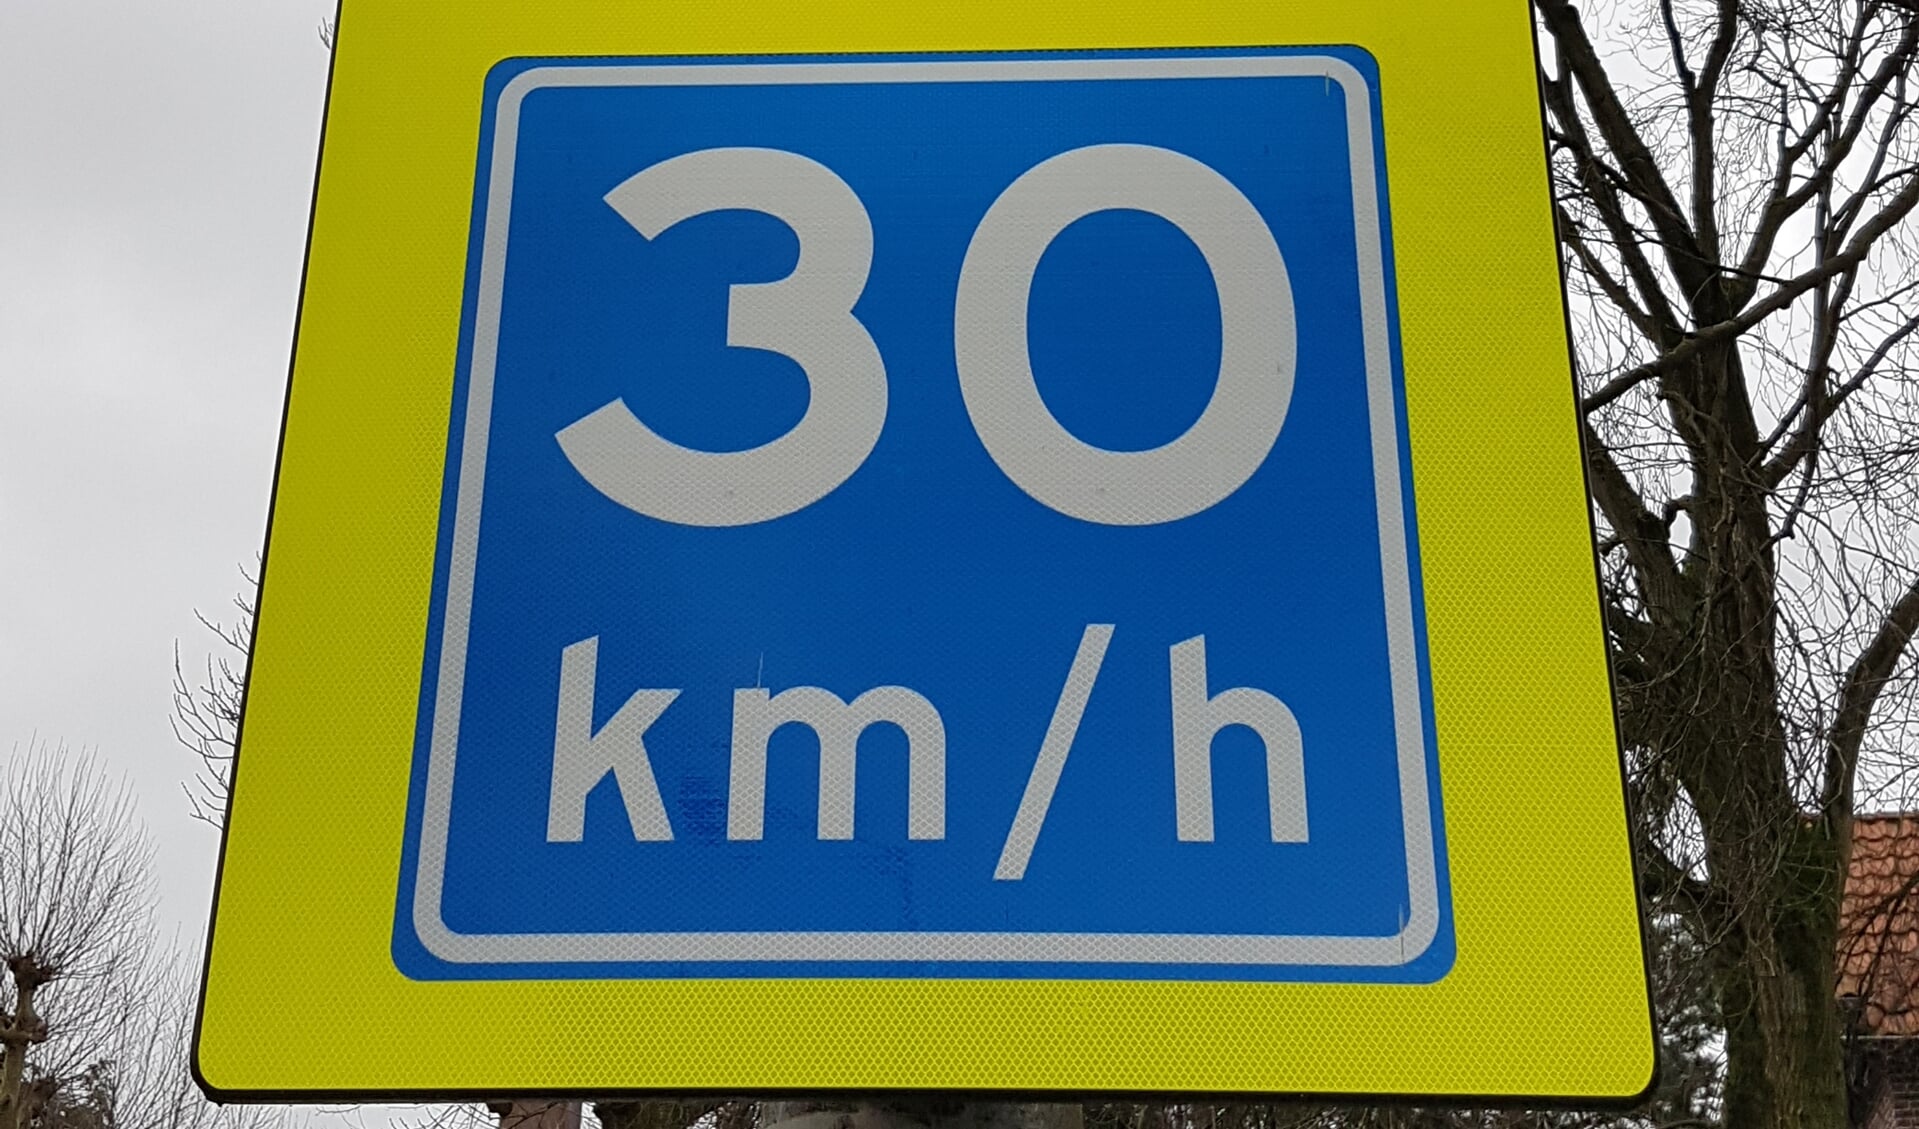 De PvdA wil dat 30 km/uur de maximale snelheid wordt in Amstelveen, met uitzondering van een aantal doorgaande wegen.